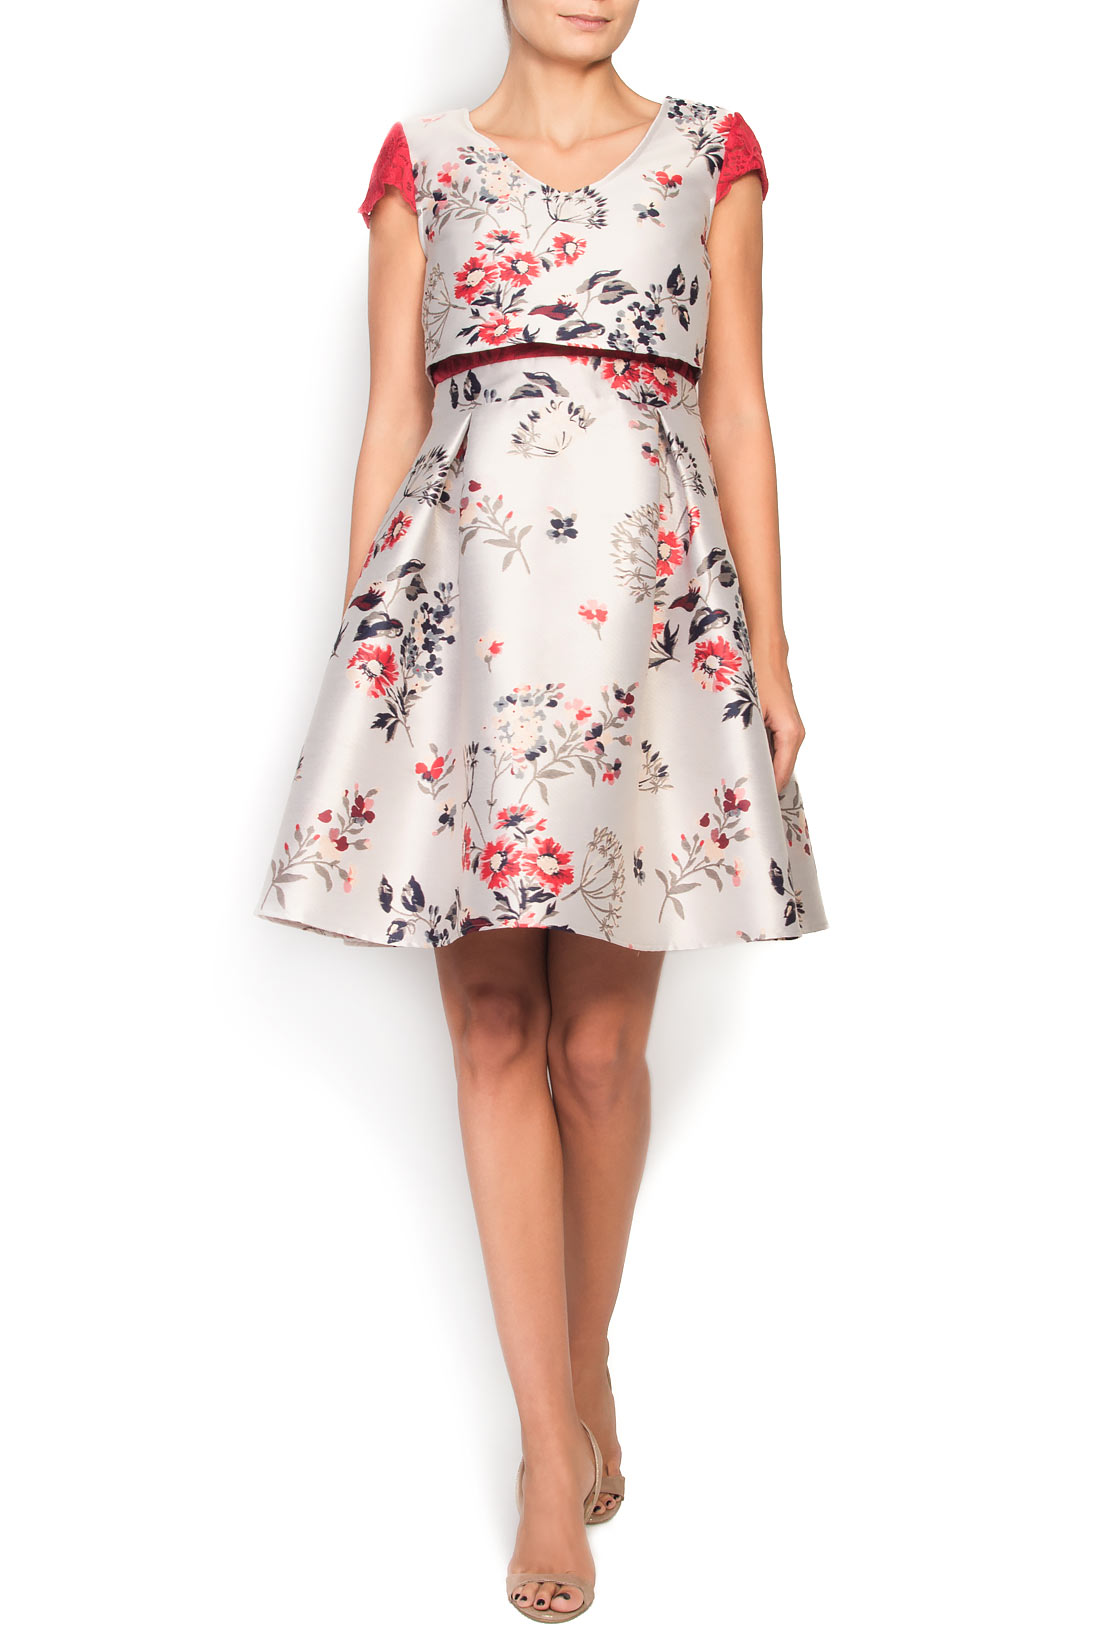 Floral-jacquard mini dress Elena Perseil image 0